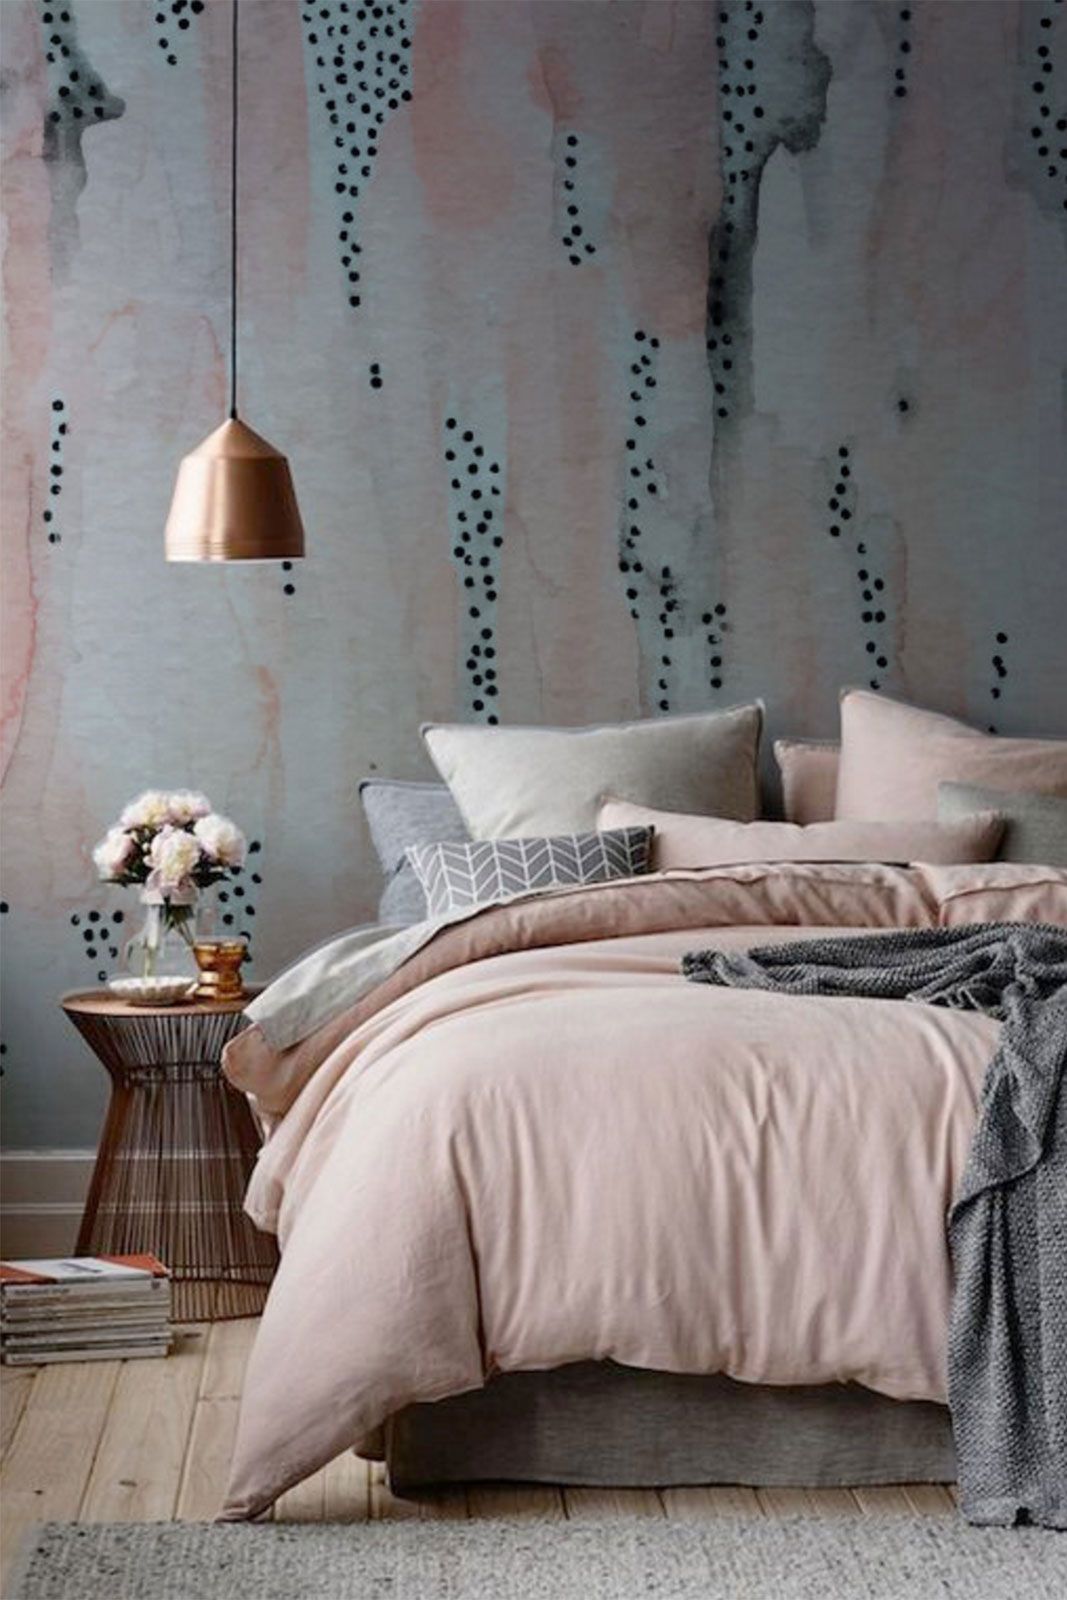 unusual bedroom wallpaper,bedroom,furniture,bed,room,bedding